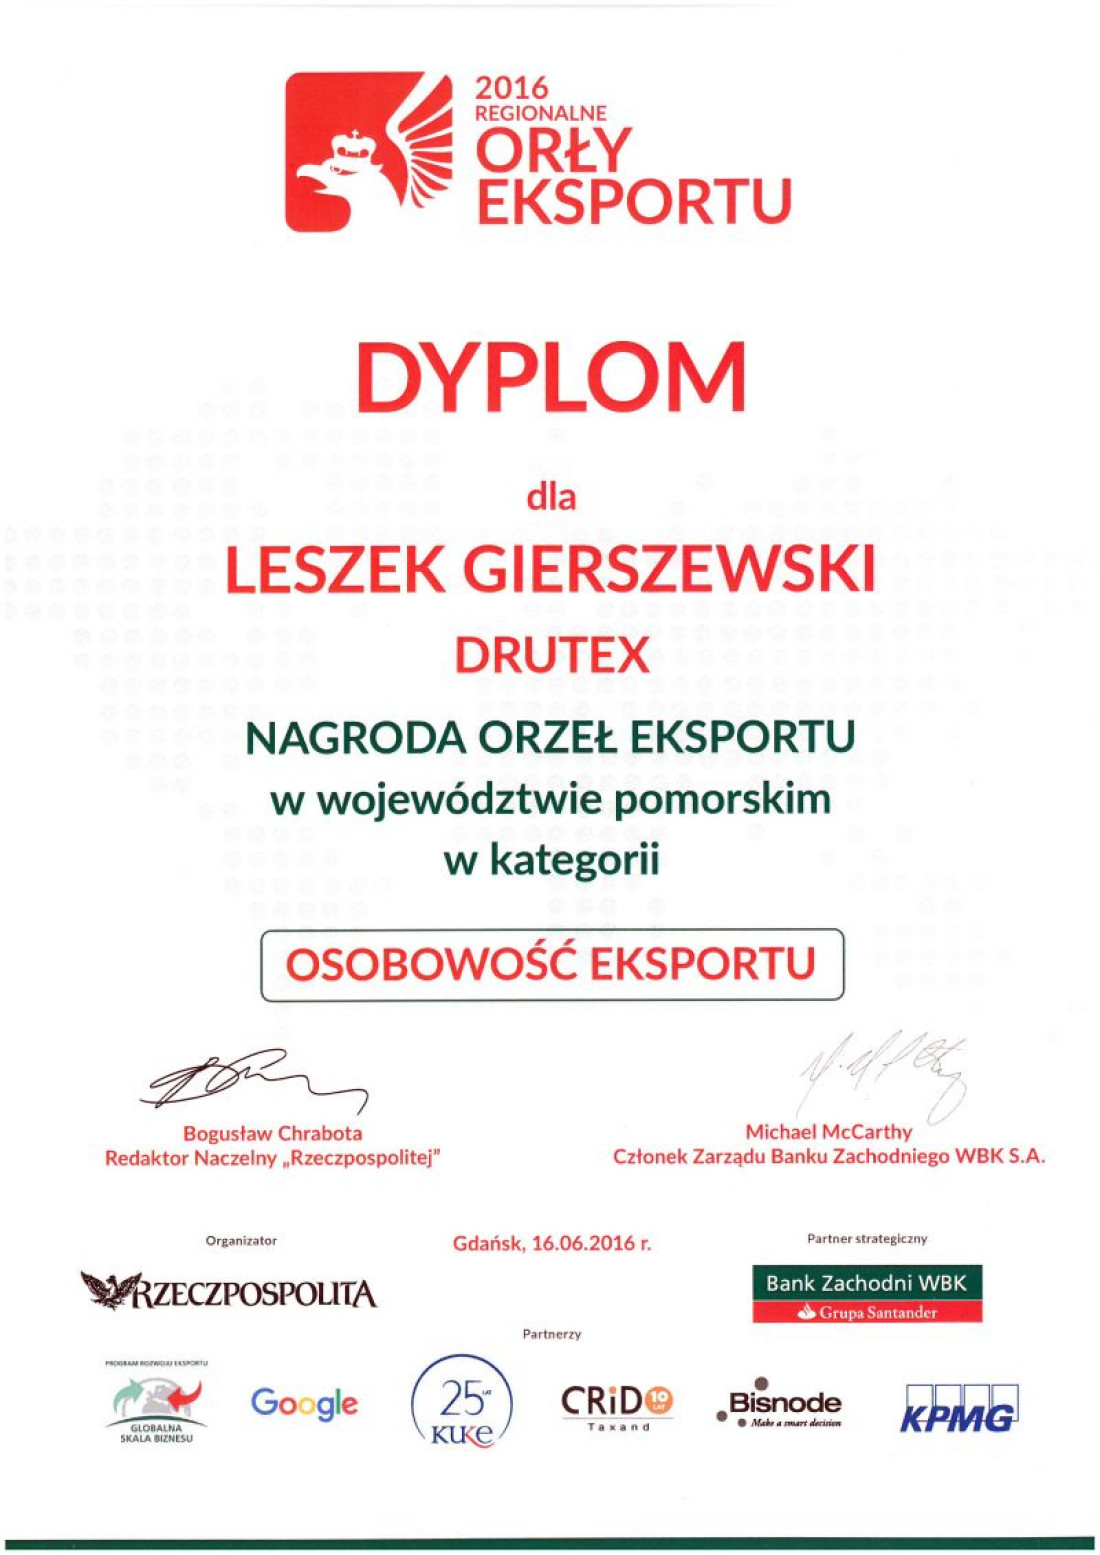 Nagroda Dziennika "Rzeczpospolita" – Orły Eksportu dla DRUTEX S.A. i prezesa Leszka Gierszewskiego